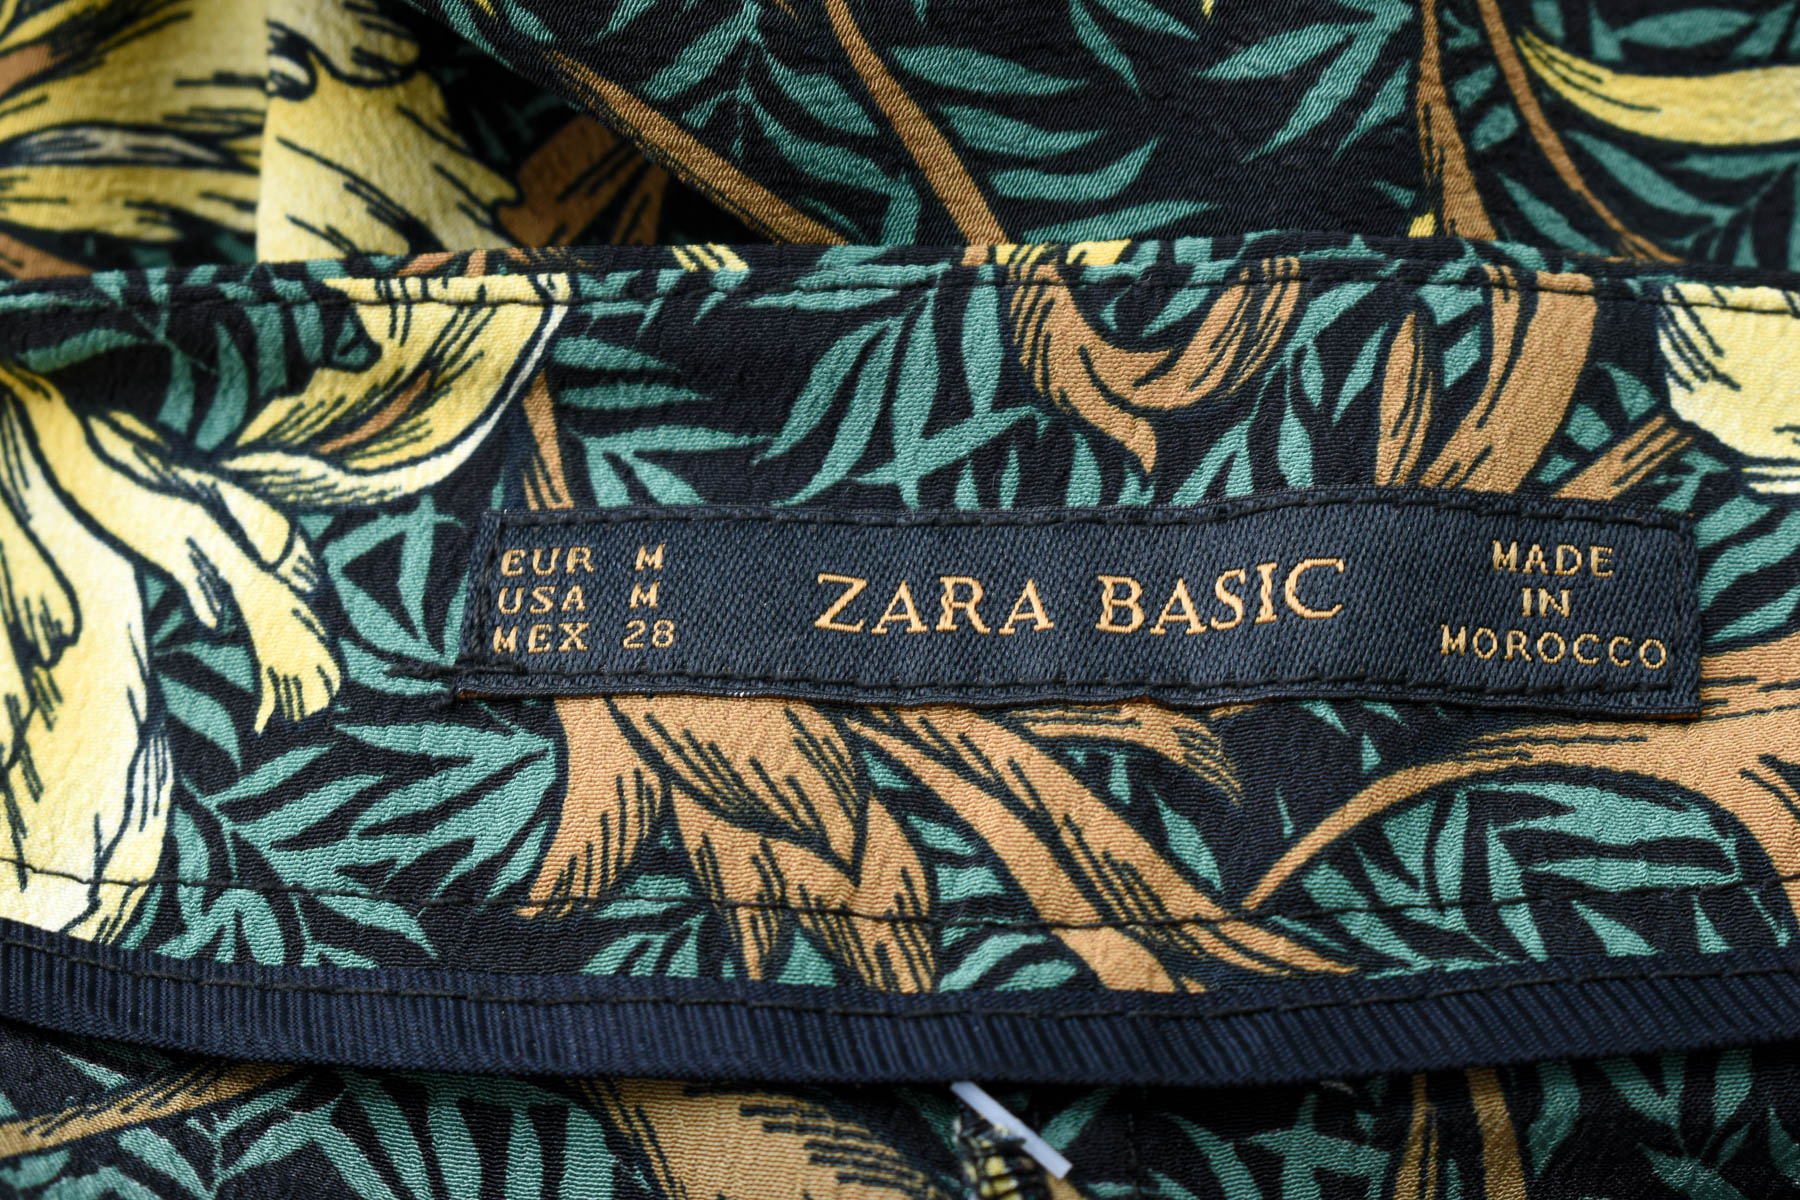 Γυναικεία παντελόνια - ZARA Basic - 2